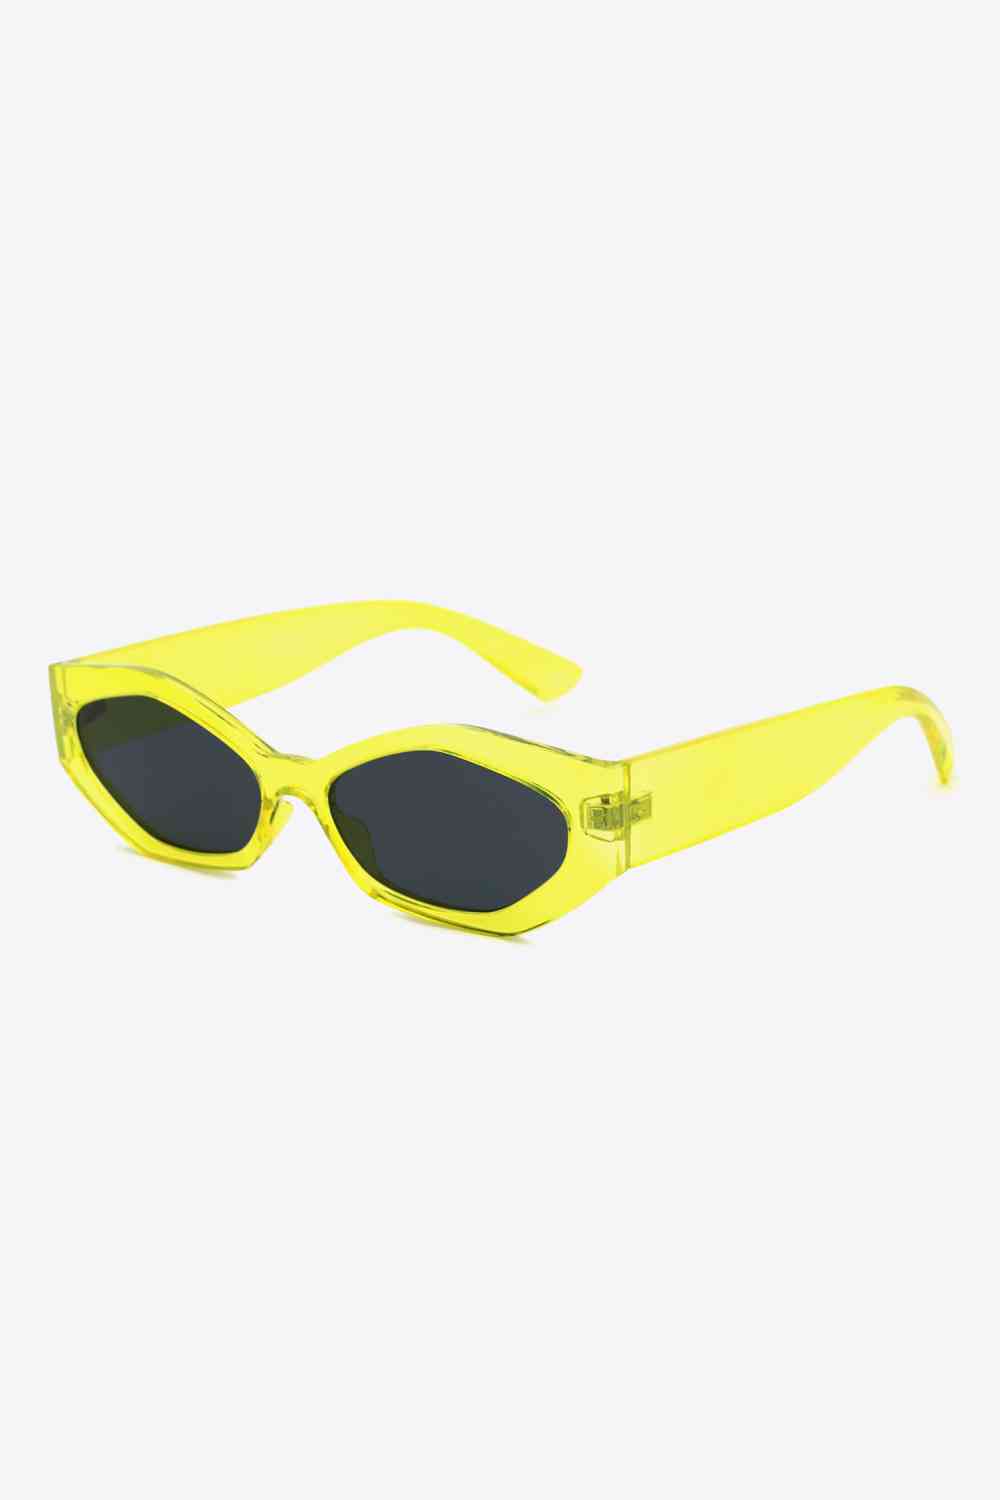 TEEK - Sautee Sis Sunglasses EYEGLASSES TEEK Trend Lemon  